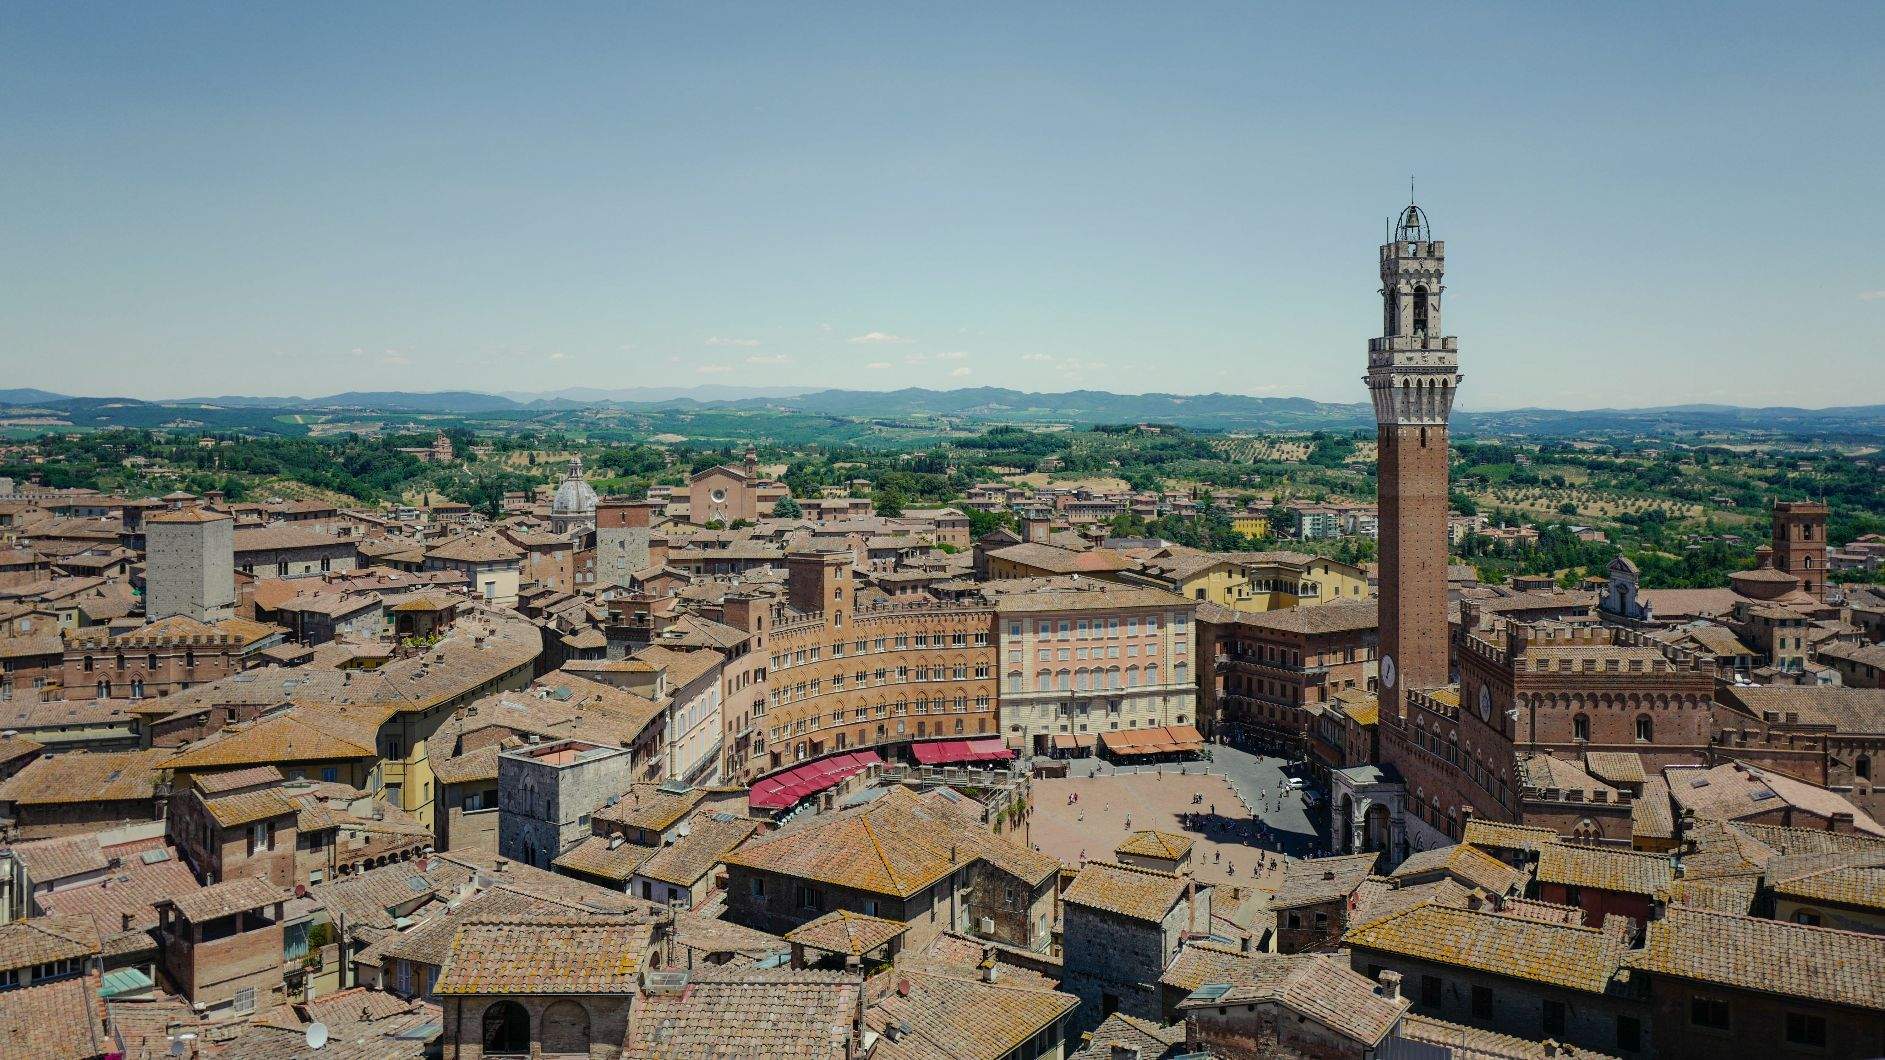 Auf dem Bild sieht man die Innenstadt von Siena von weiter oben aufgenommen